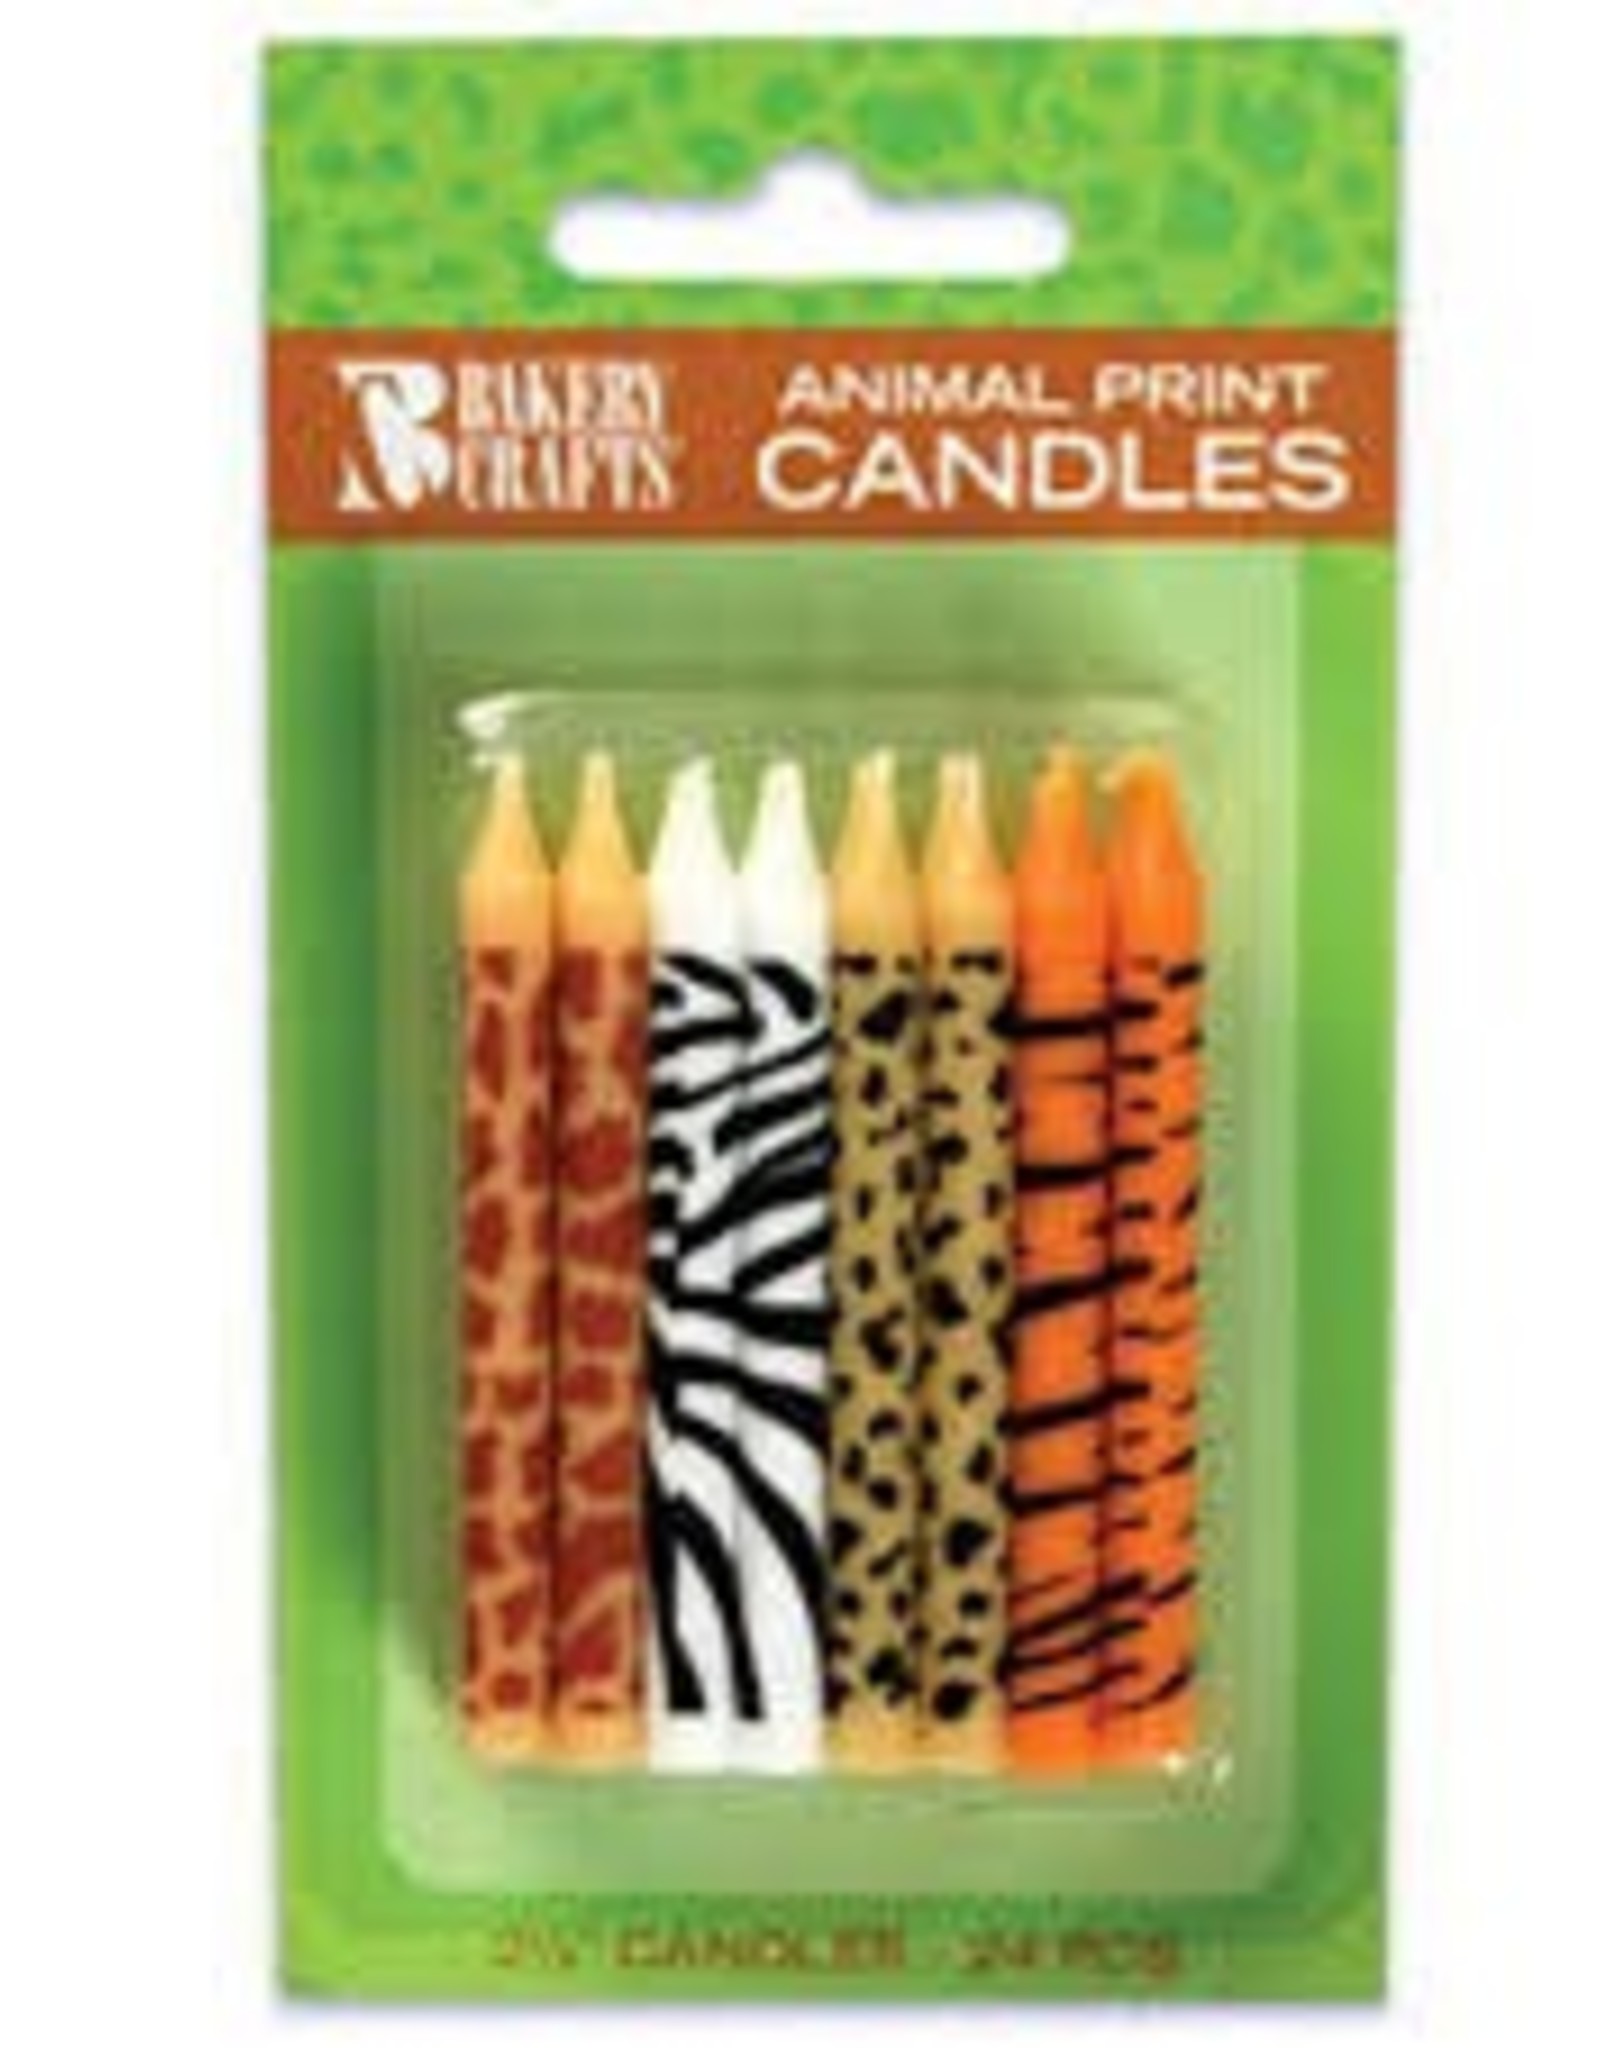 Animal Print Candles